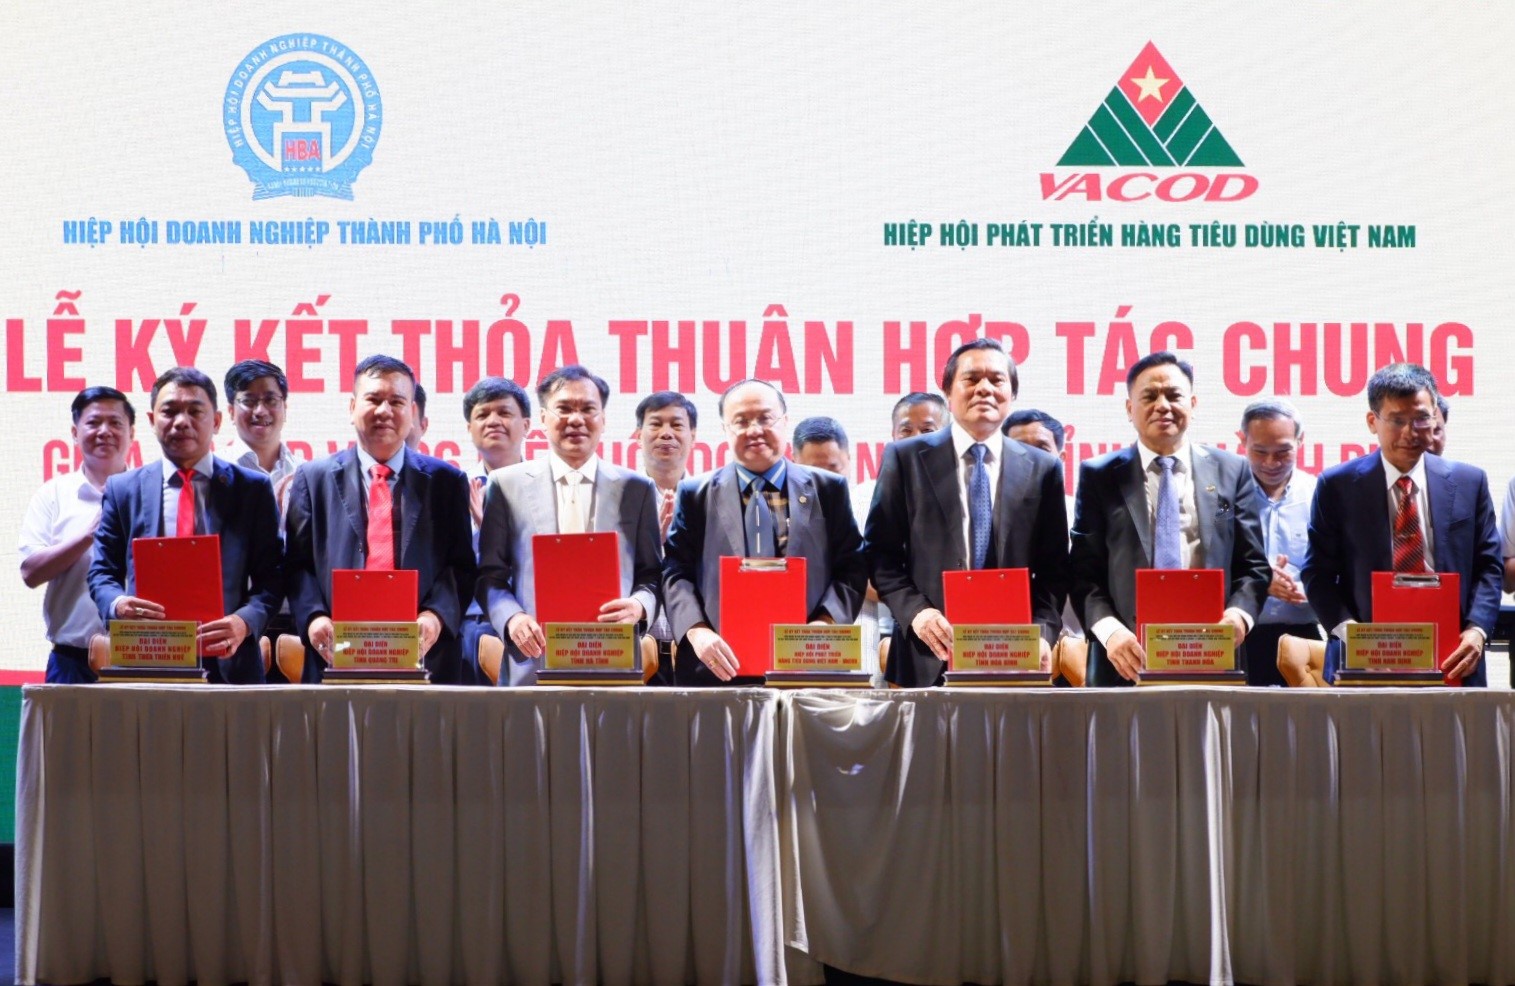 VACOD ký kết thoả thuận hợp tác chung với hiệp hội doanh nghiệp 6 tỉnh Hòa Bình, Nam Định, Thanh Hóa, Hà Tĩnh, Quảng trị, Thừa Thiên Huế